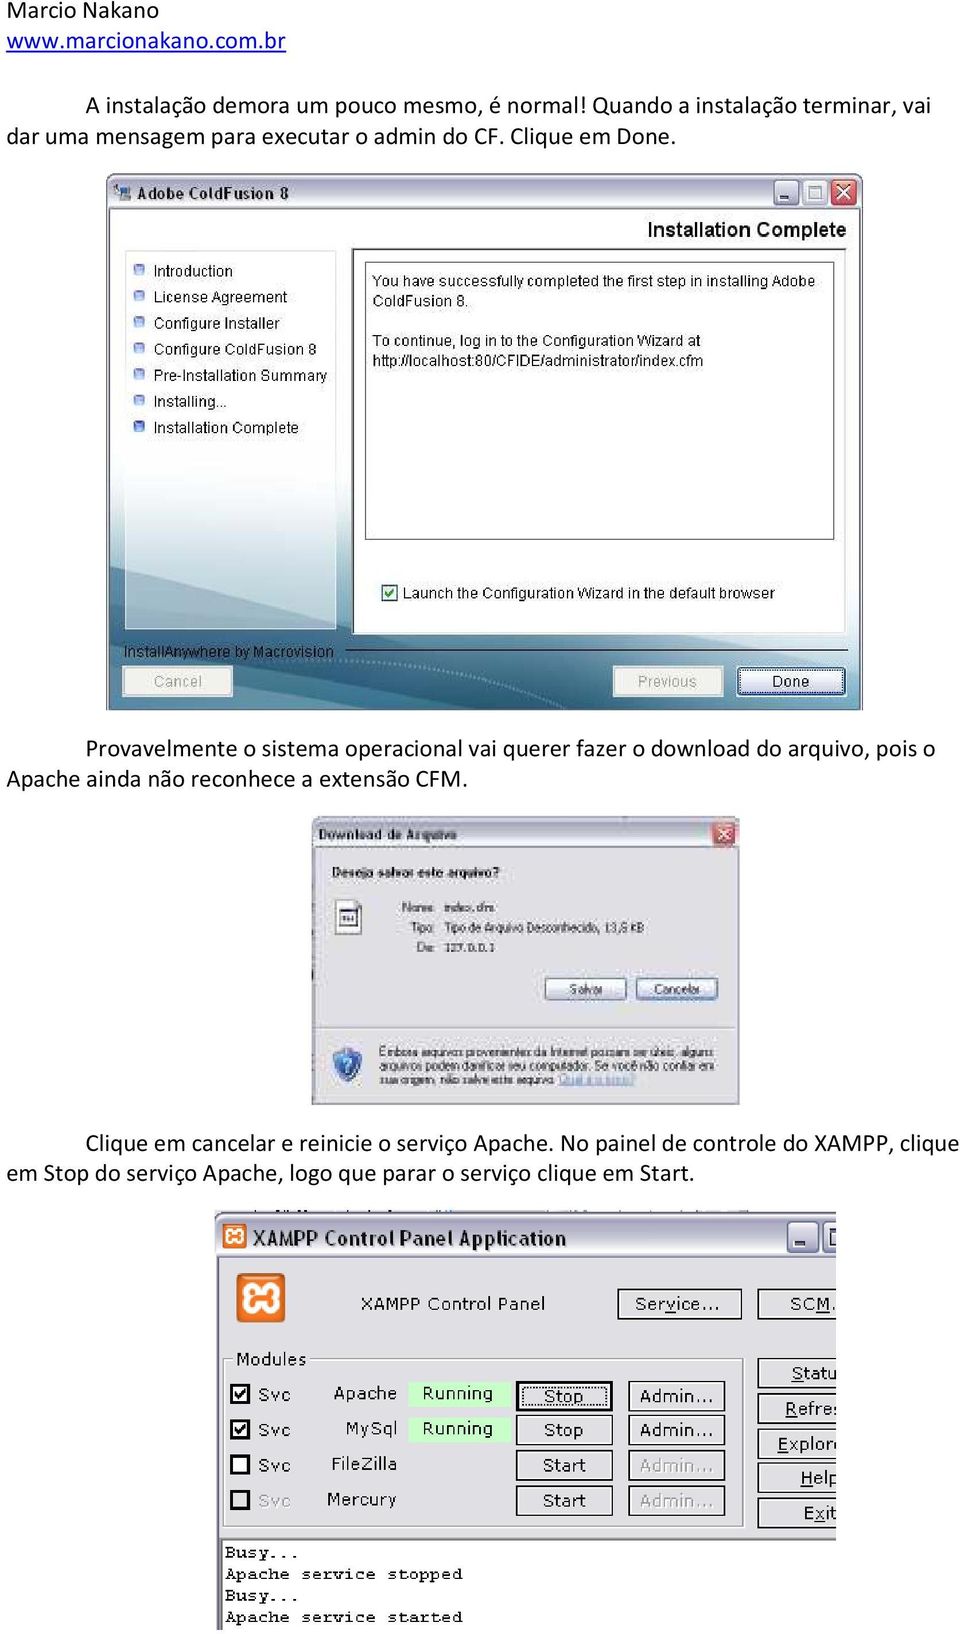 Provavelmente o sistema operacional vai querer fazer o download do arquivo, pois o Apache ainda não